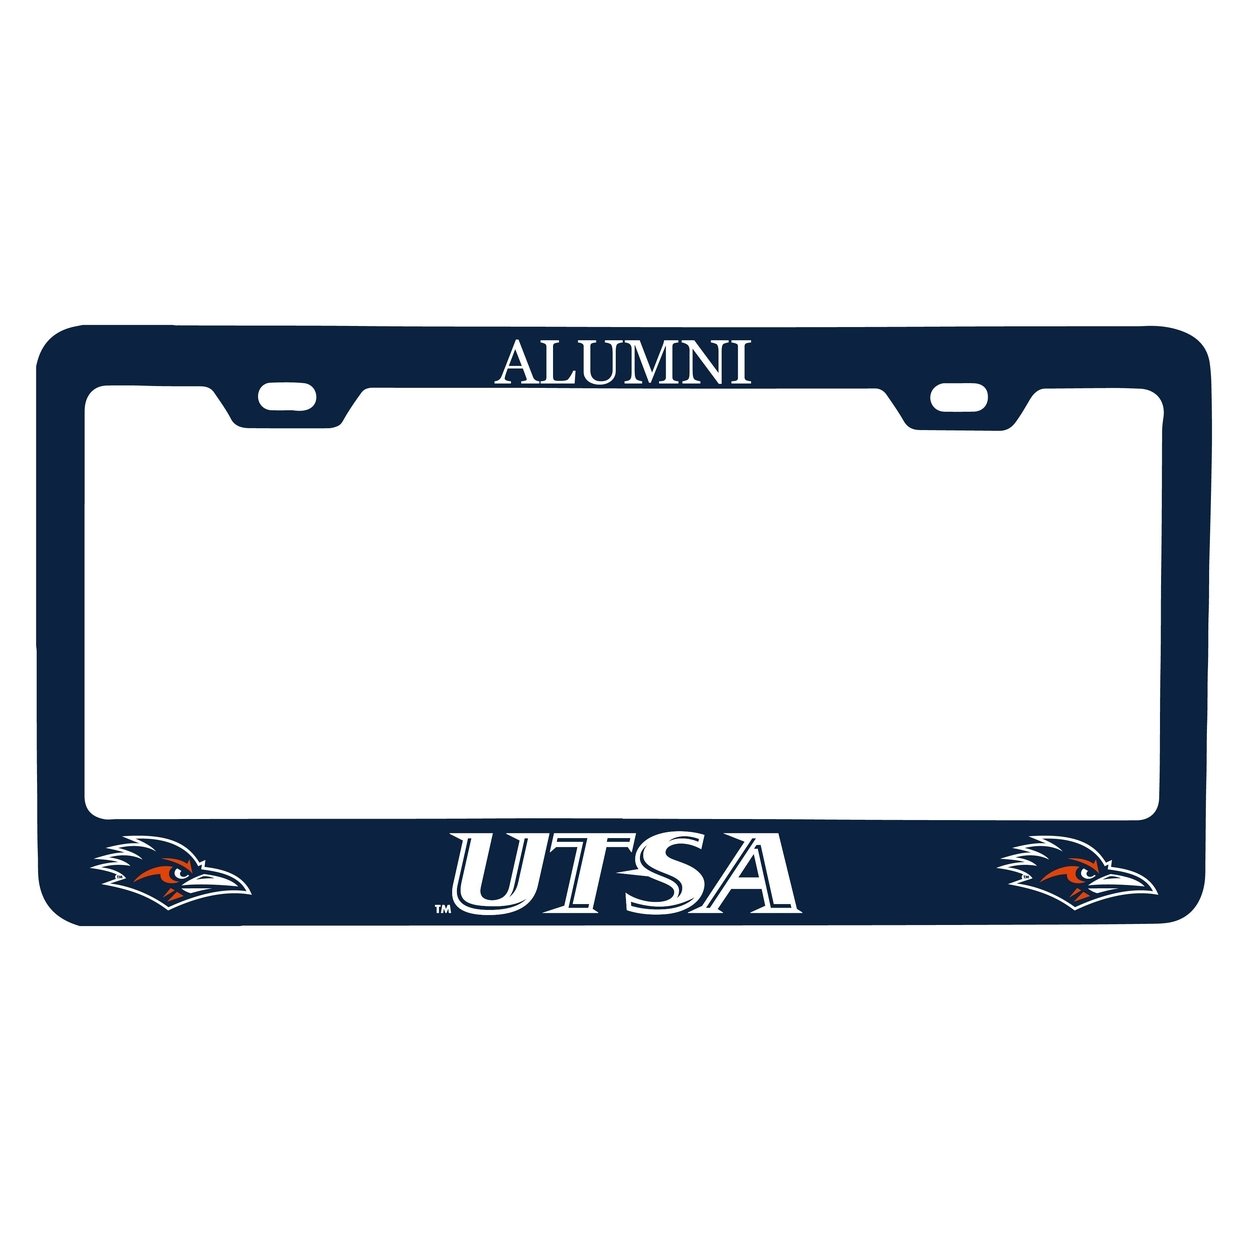 UTSA Road Runners Alumni License Plate Frame